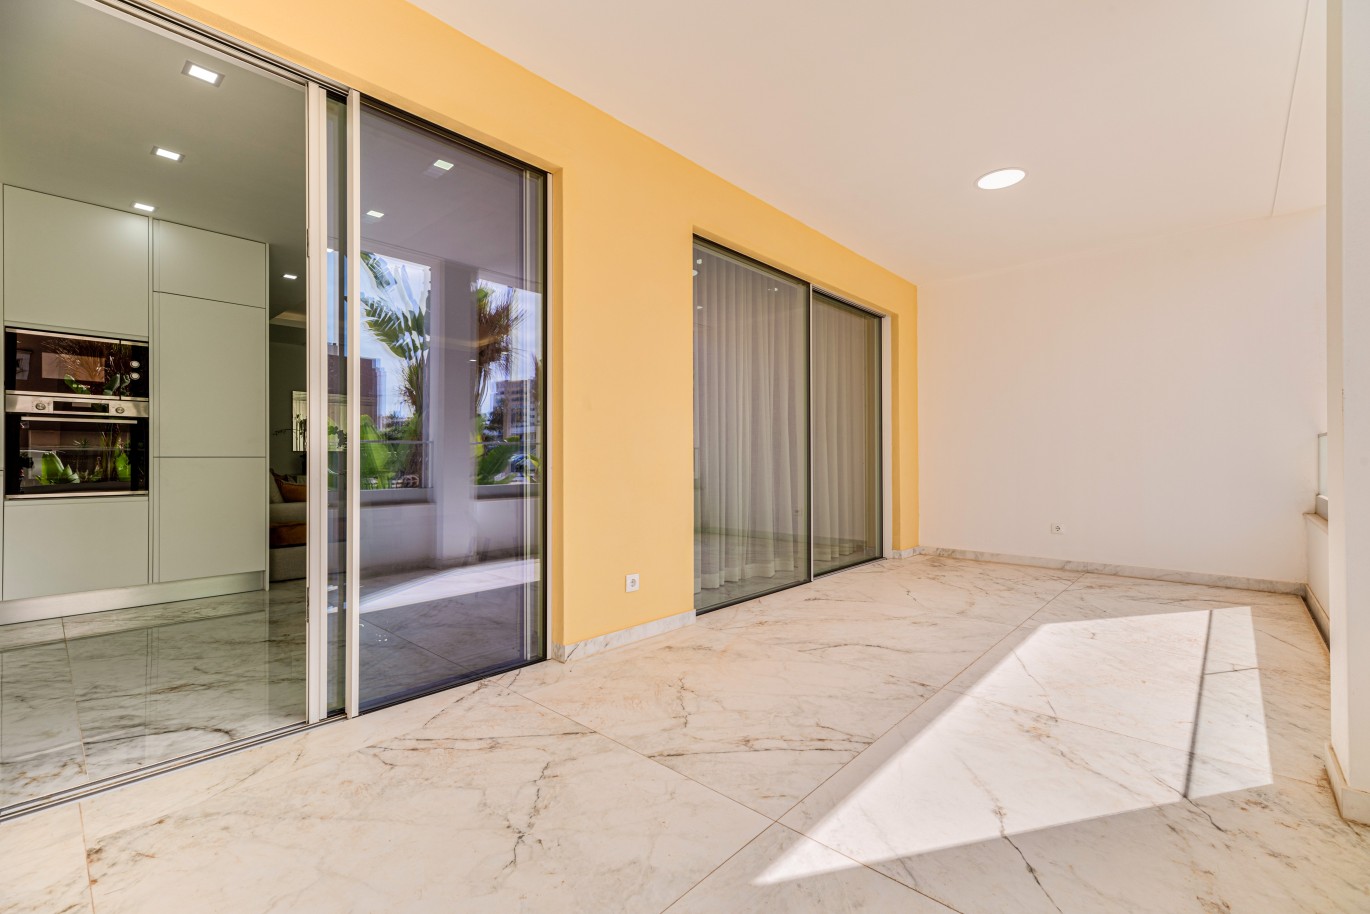 Apartamento, com terraço, para venda, em Lagos, Algarve_238134